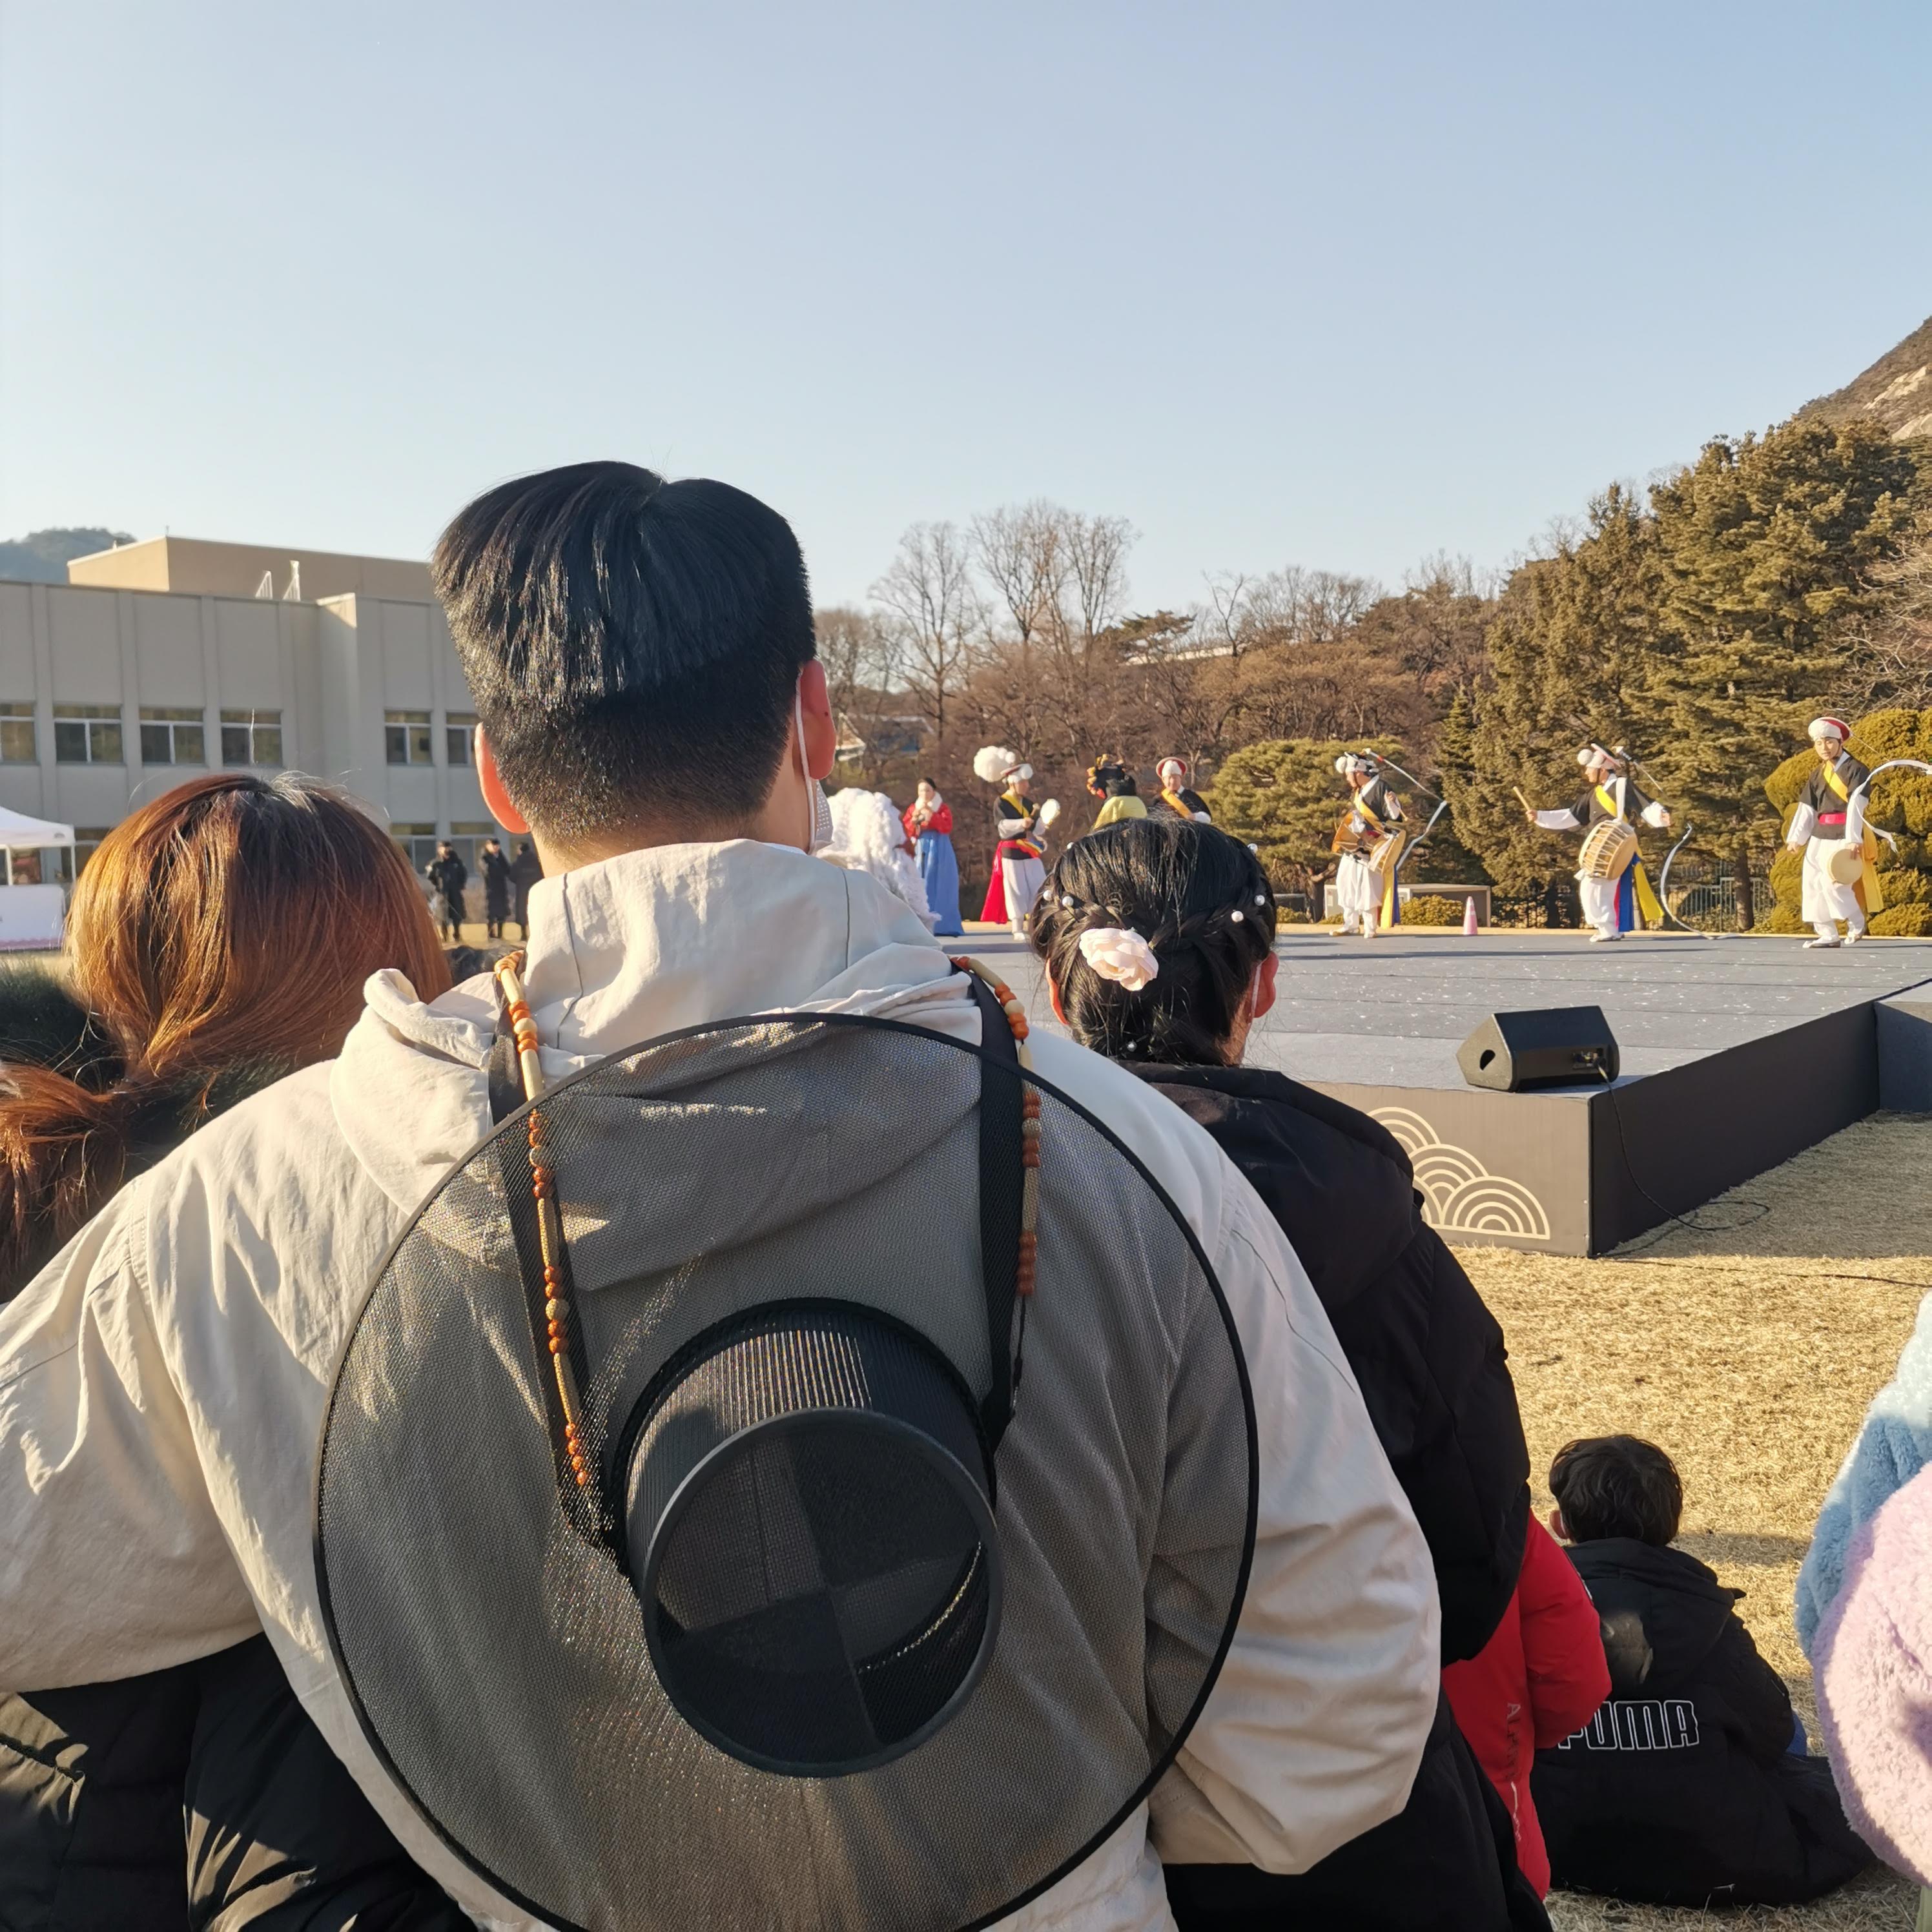 A pufidzseki alatt hanbok (népviselet), fölötte a hozzá tartozó kalap